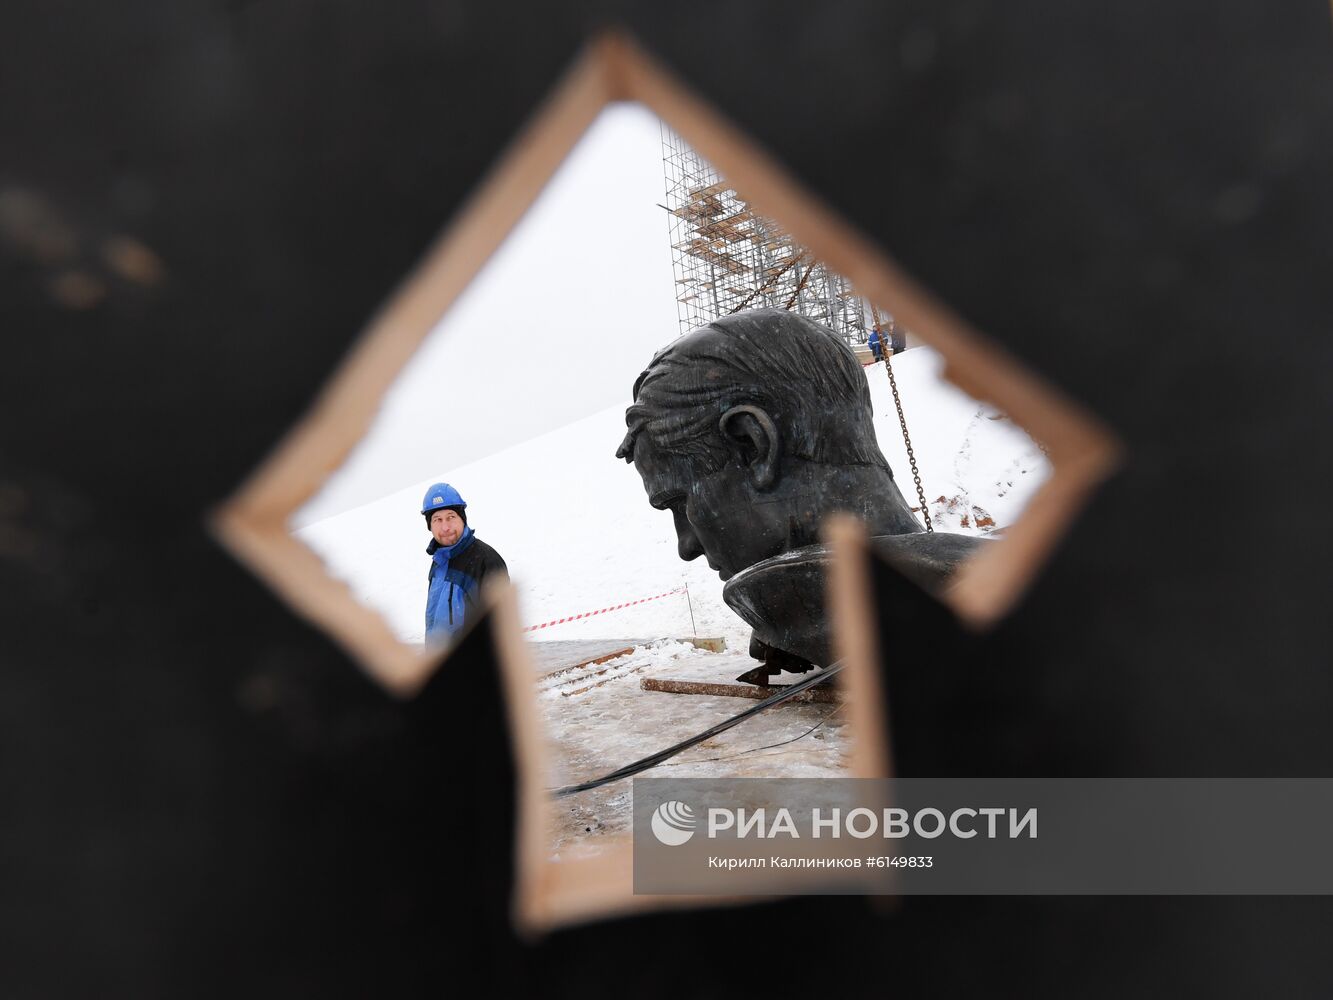 Установка центральной фигуры Ржевского мемориала